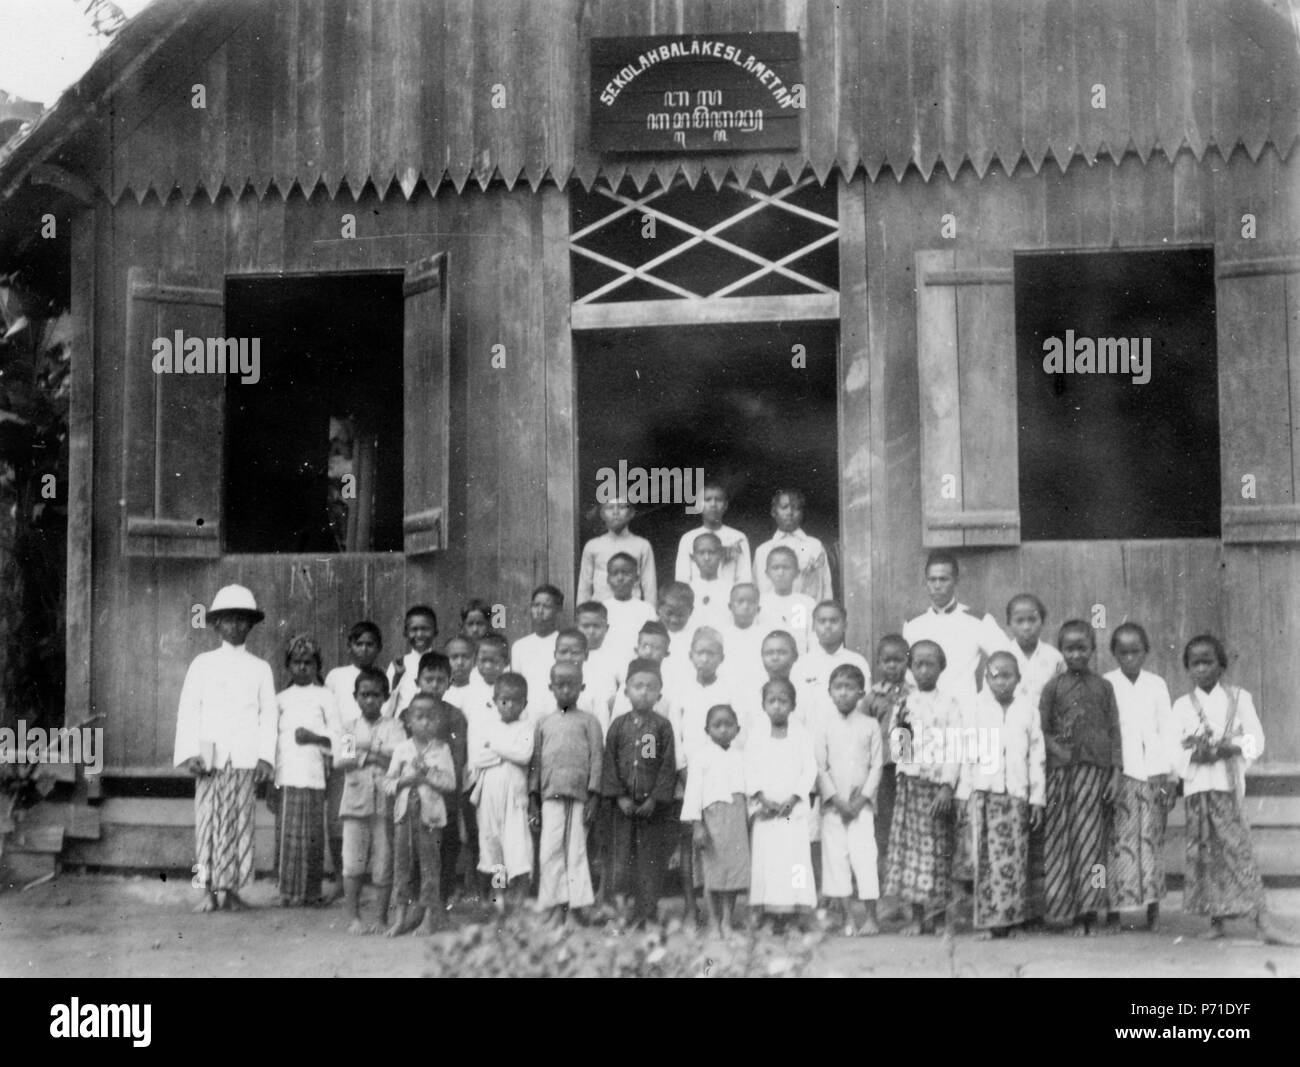 13 Frälsningsarméns skola och skolbarn. Sulawesi. Indonesien - SMVK - 010748B Foto Stock